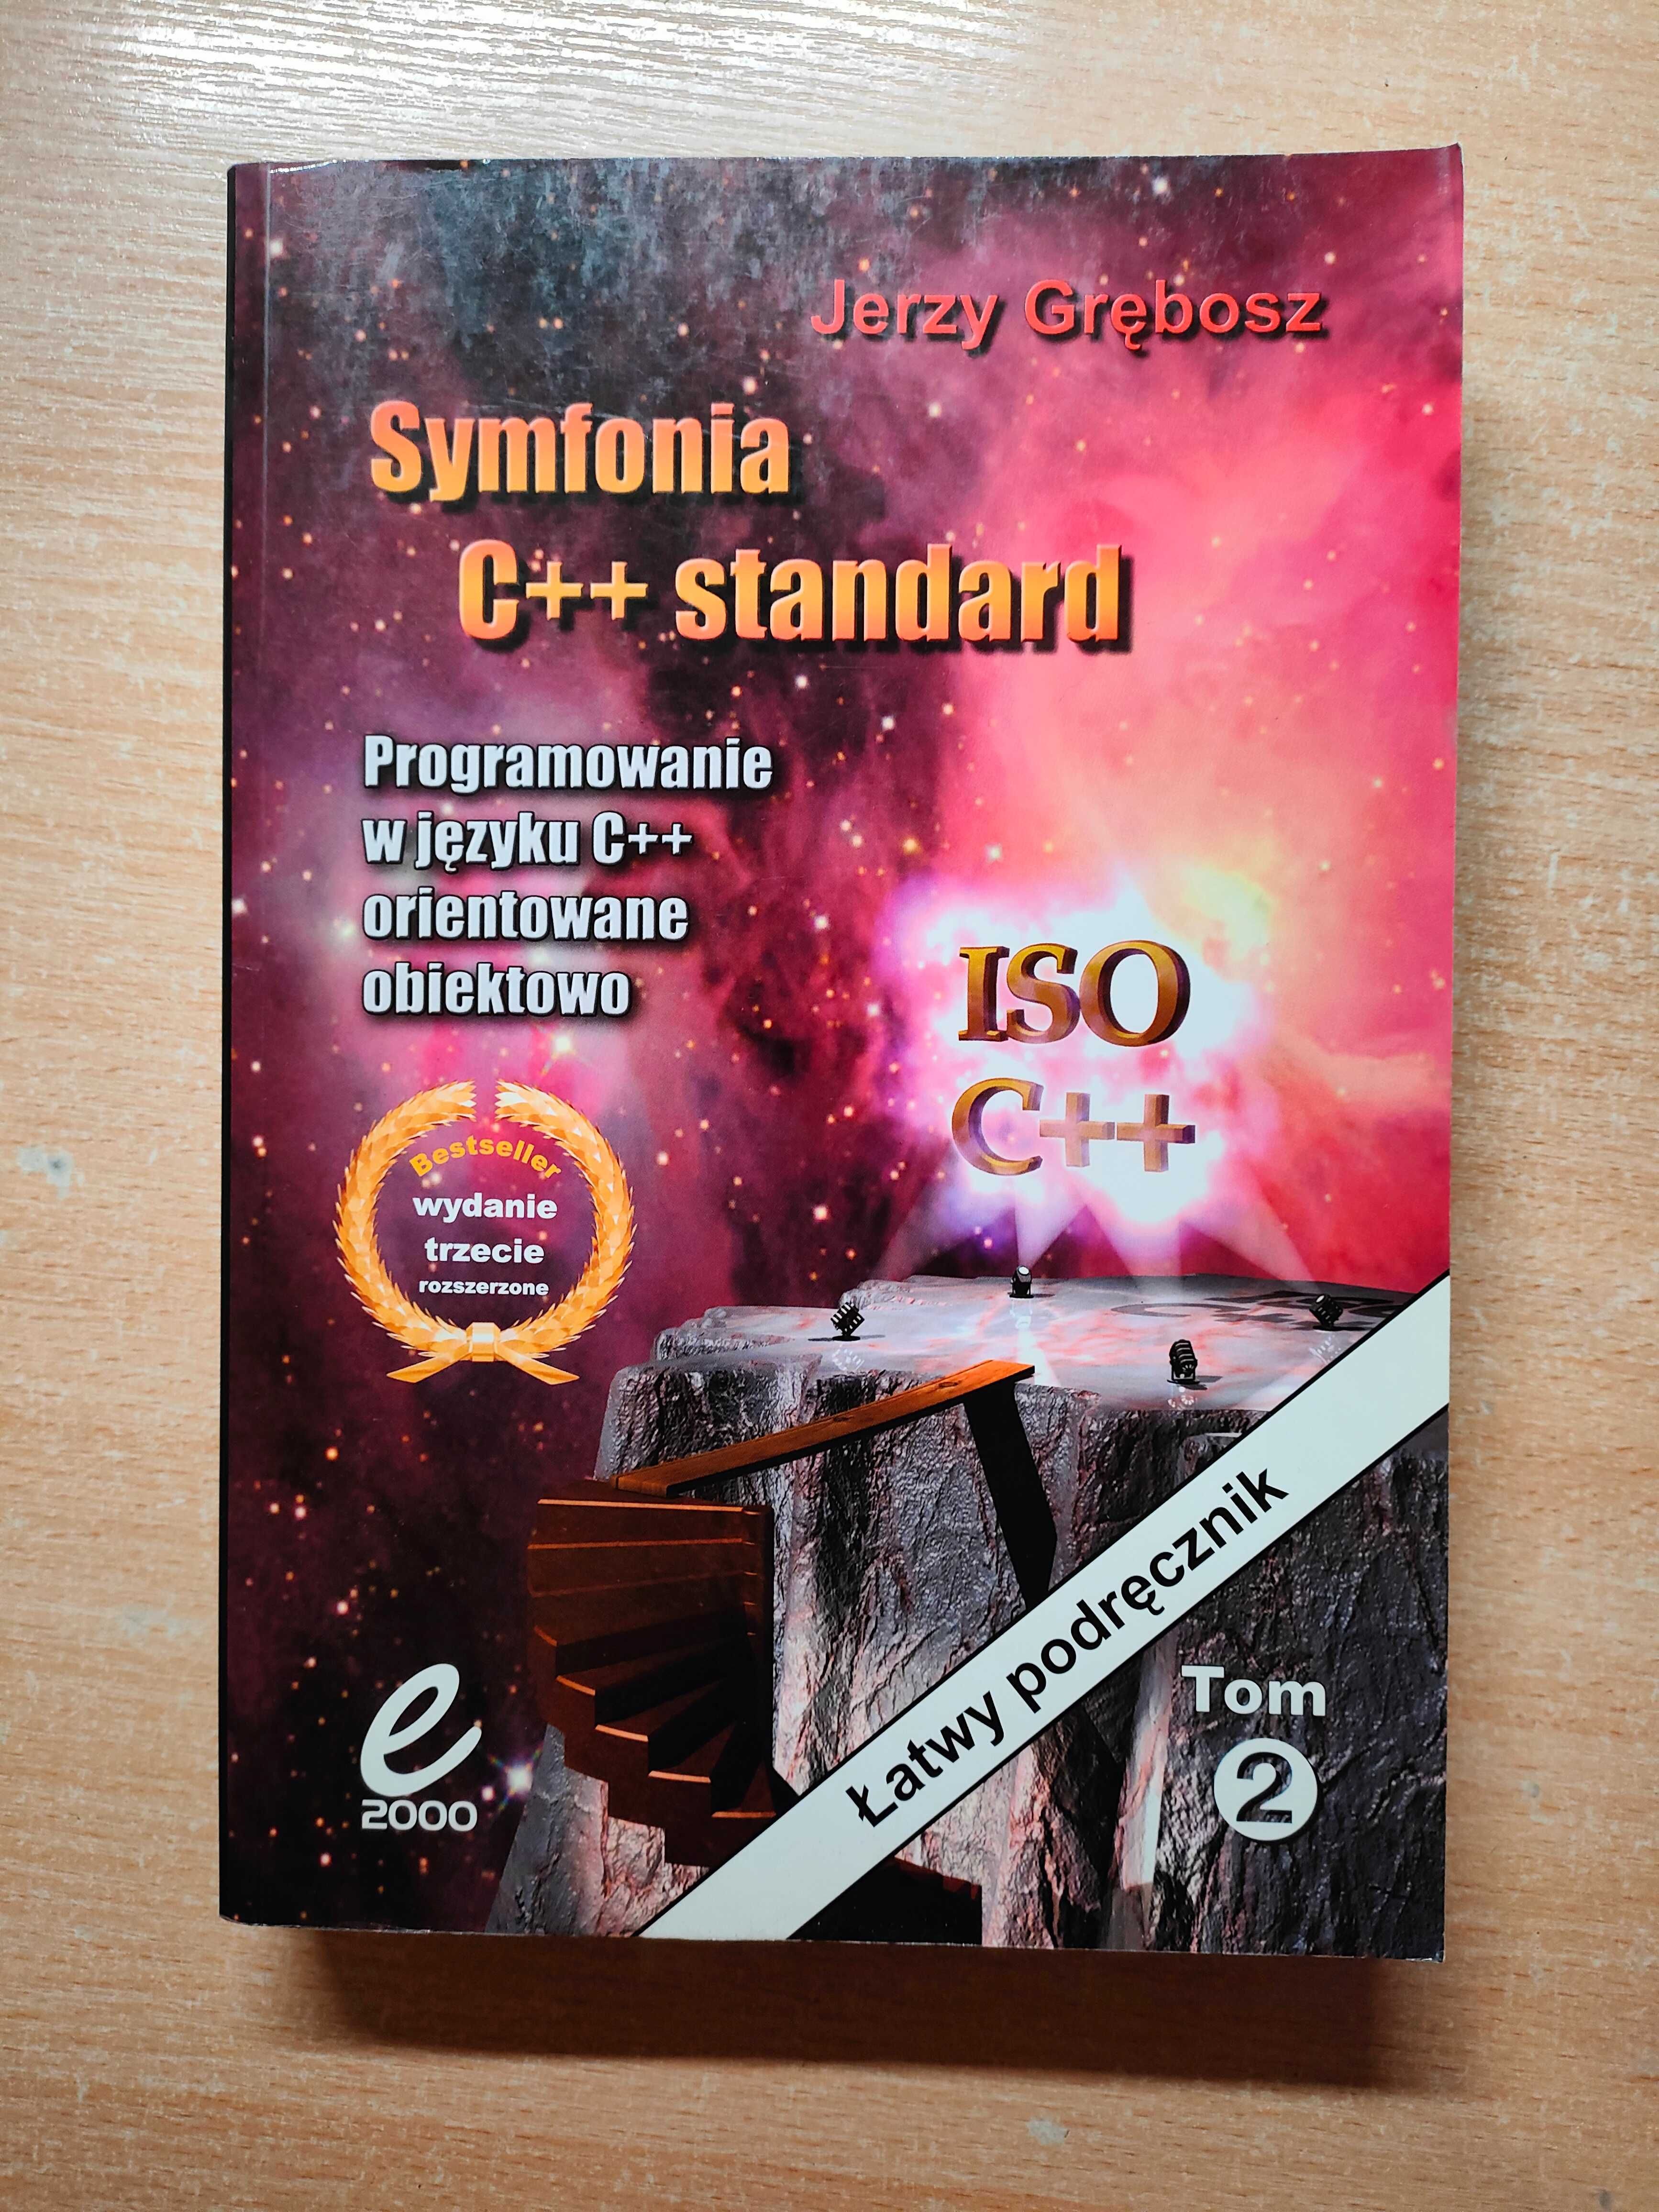 J. Grębosz "Symfonia C++ standard" tom I i II